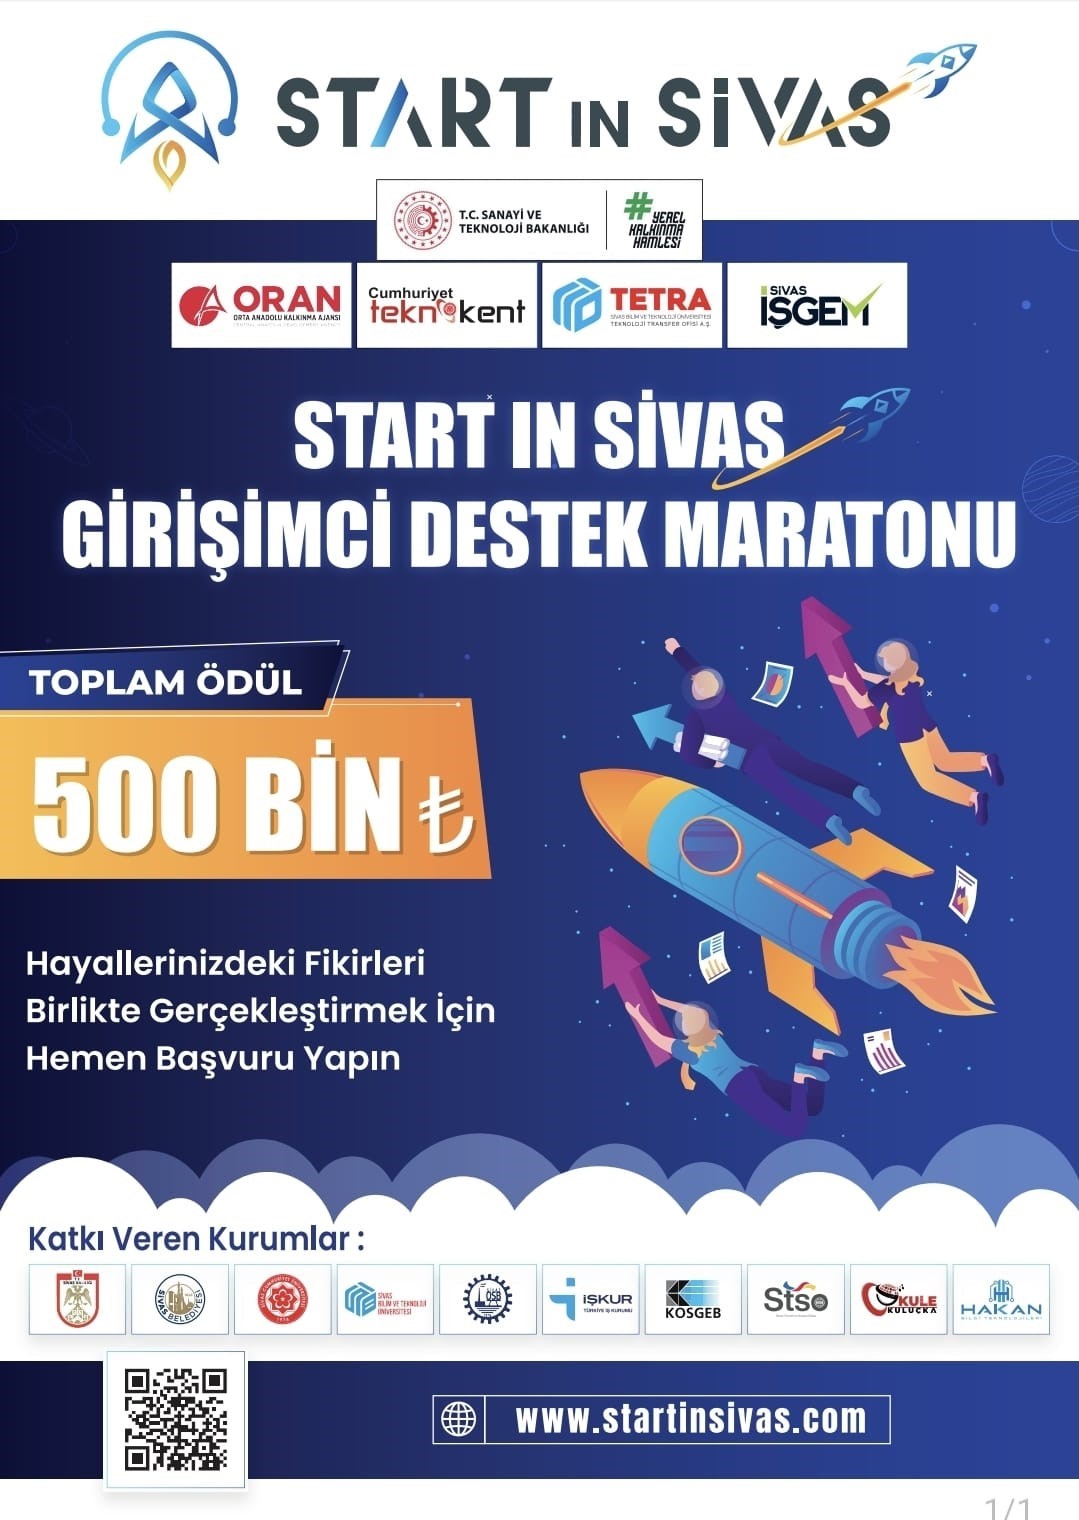 Start in Sivas Girişimci Destek Maratonu 2. Dönem Protokolü imzalandı
